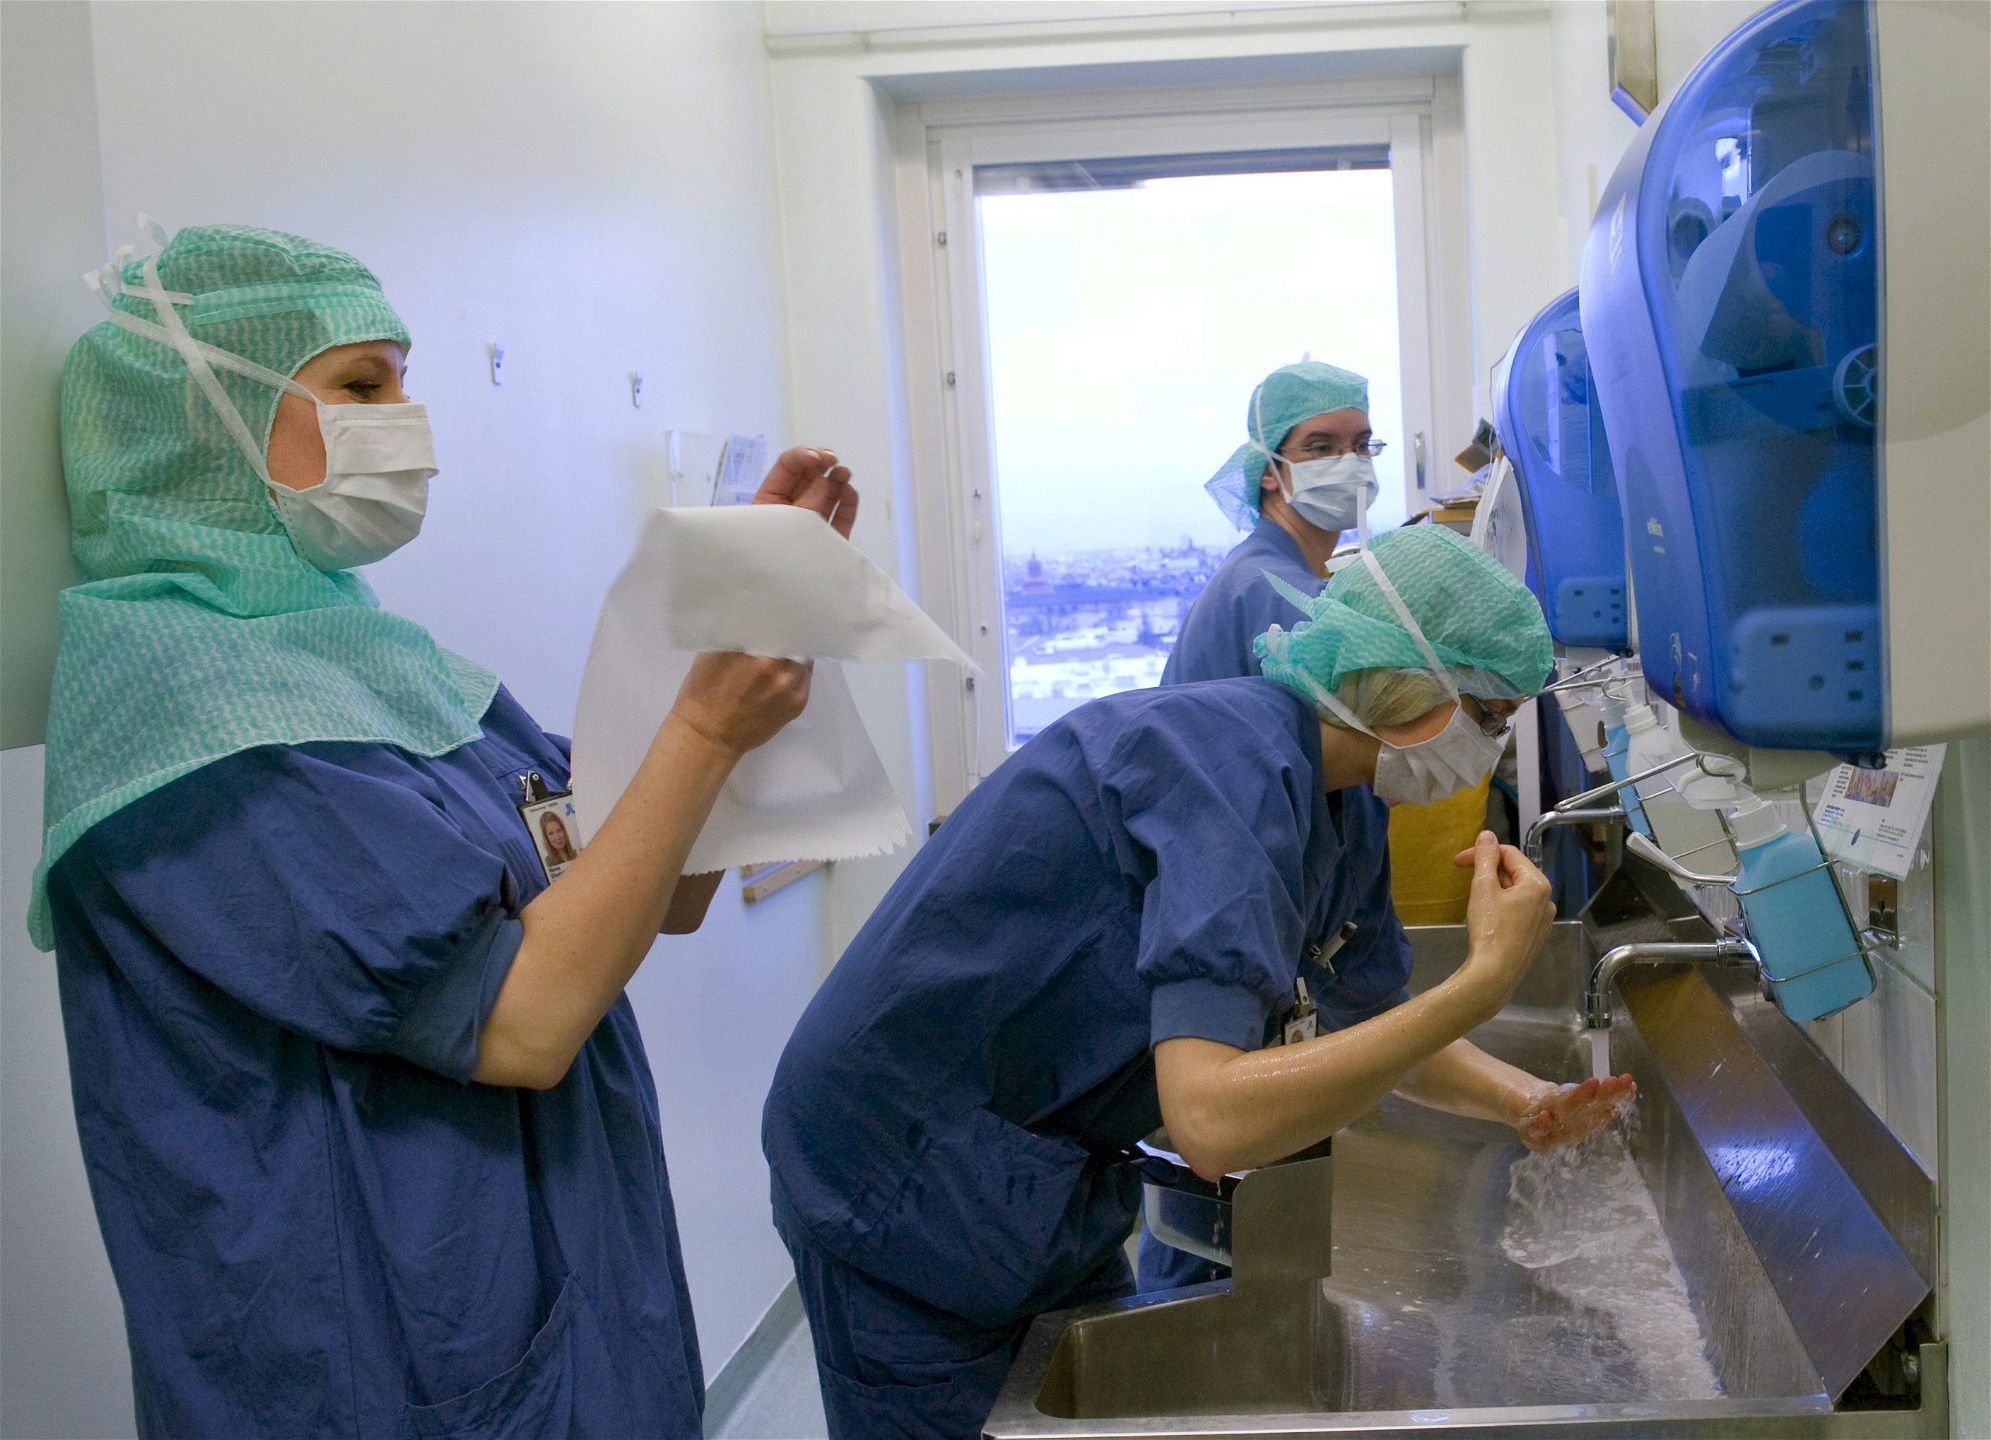 Operationssjuksköterskor på operationsavdelningen på Södersjukhuset i Stockholm. Just bristen på specialistsjuksköterskor inom kirurgi är den största. 